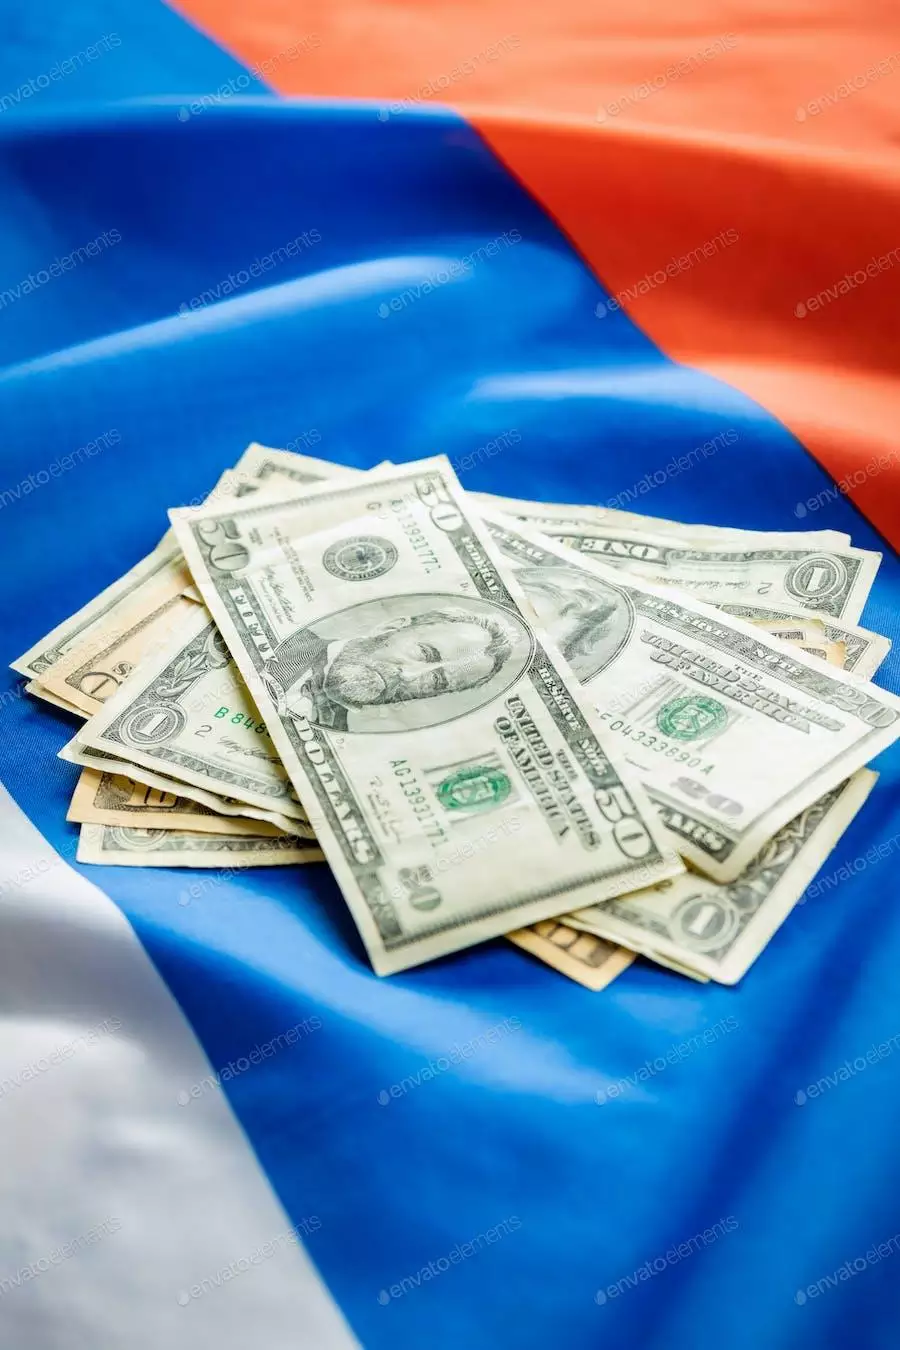 عکس دلار آمریکا روی پرچم روسیه